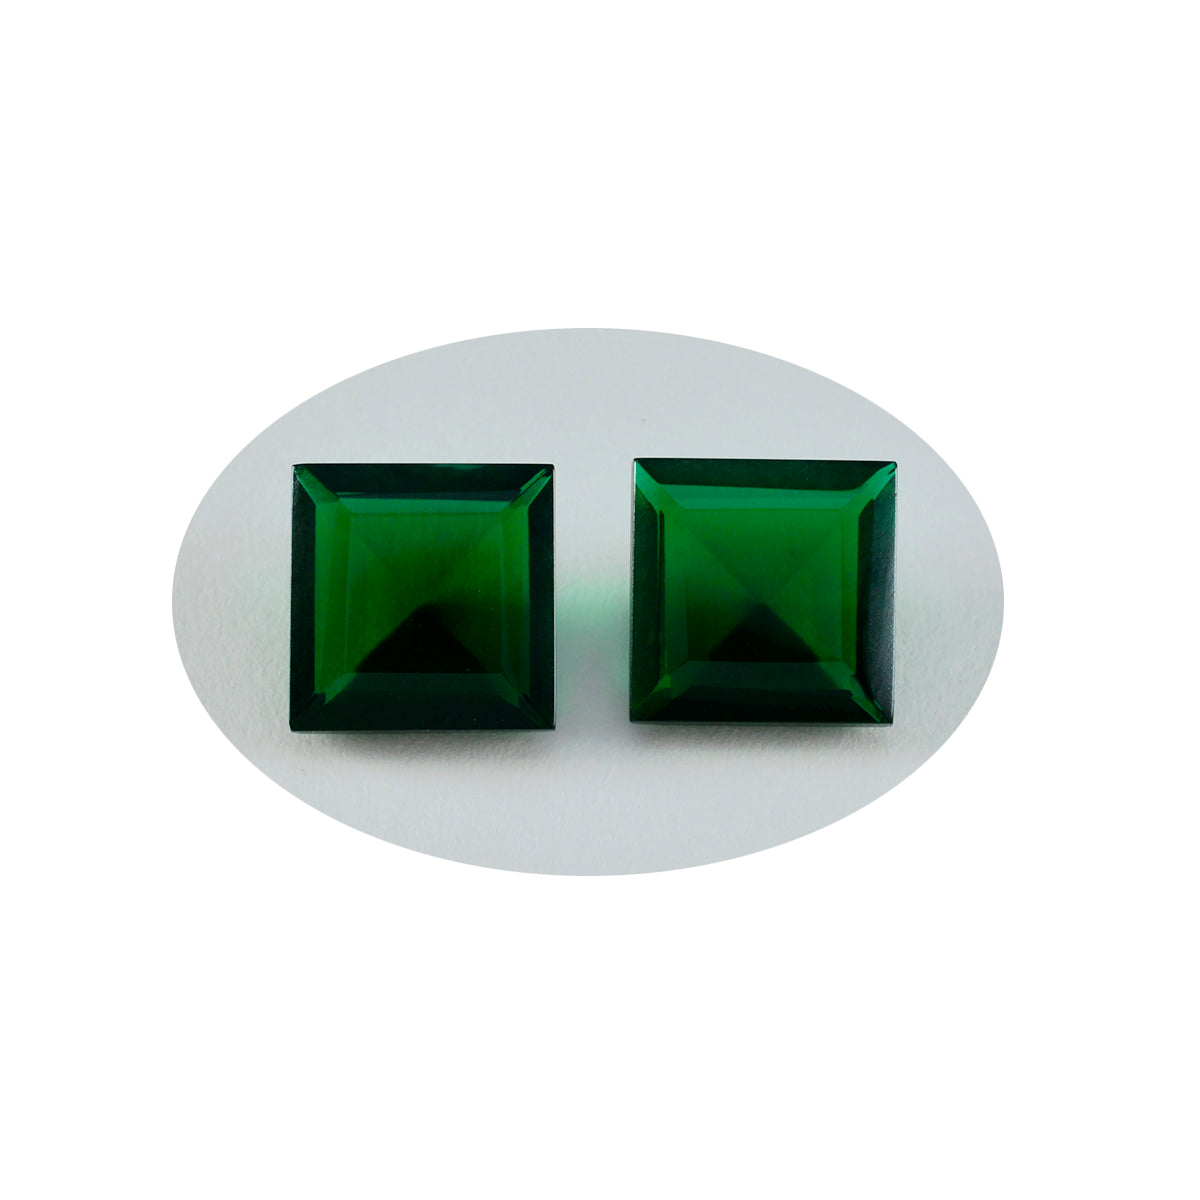 riyogems 1pc グリーン エメラルド CZ ファセット 13x13 mm 正方形の形状の素晴らしい品質のルースストーン